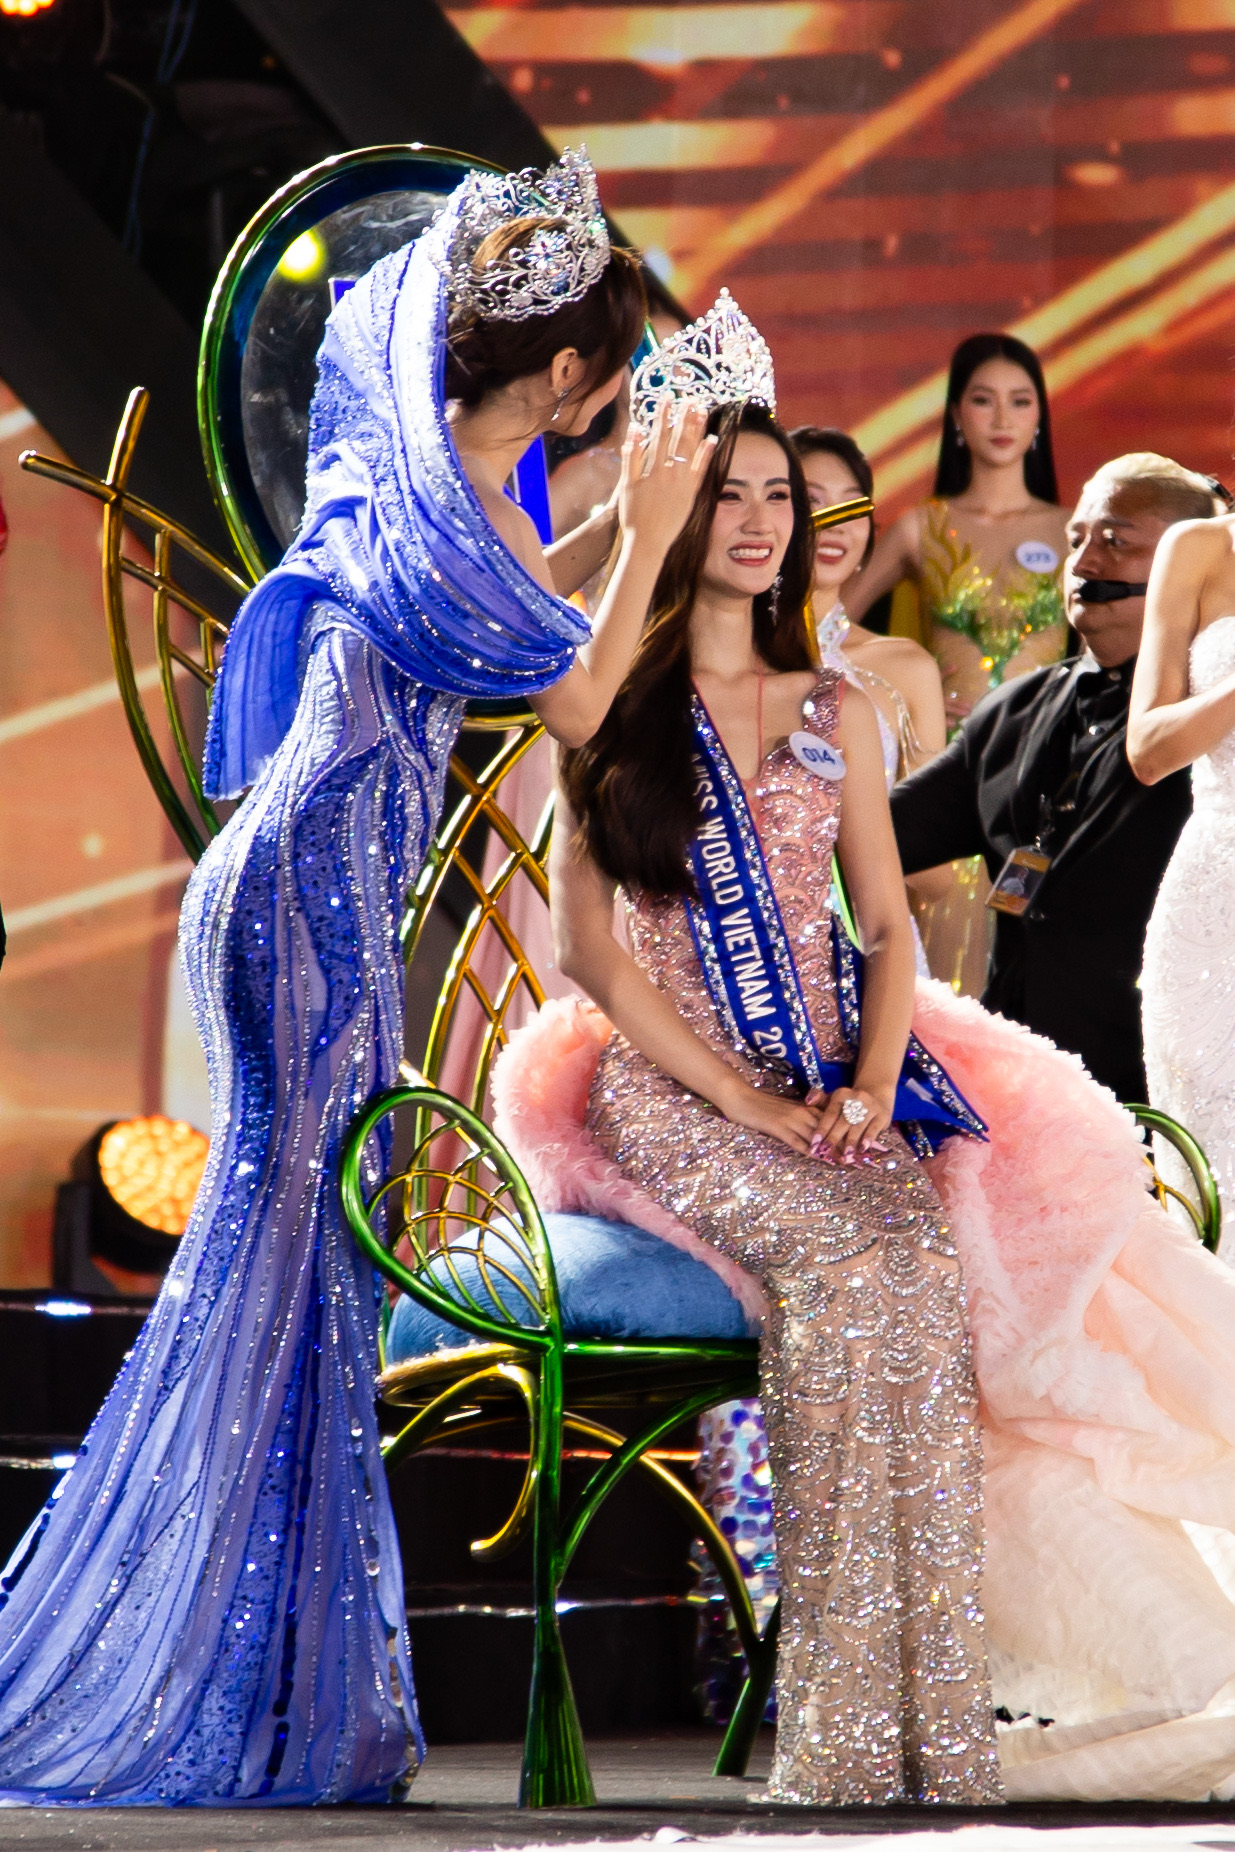 Huỳnh Trần Ý Nhi đăng quang Miss World Vietnam 2023 - Ảnh 1.